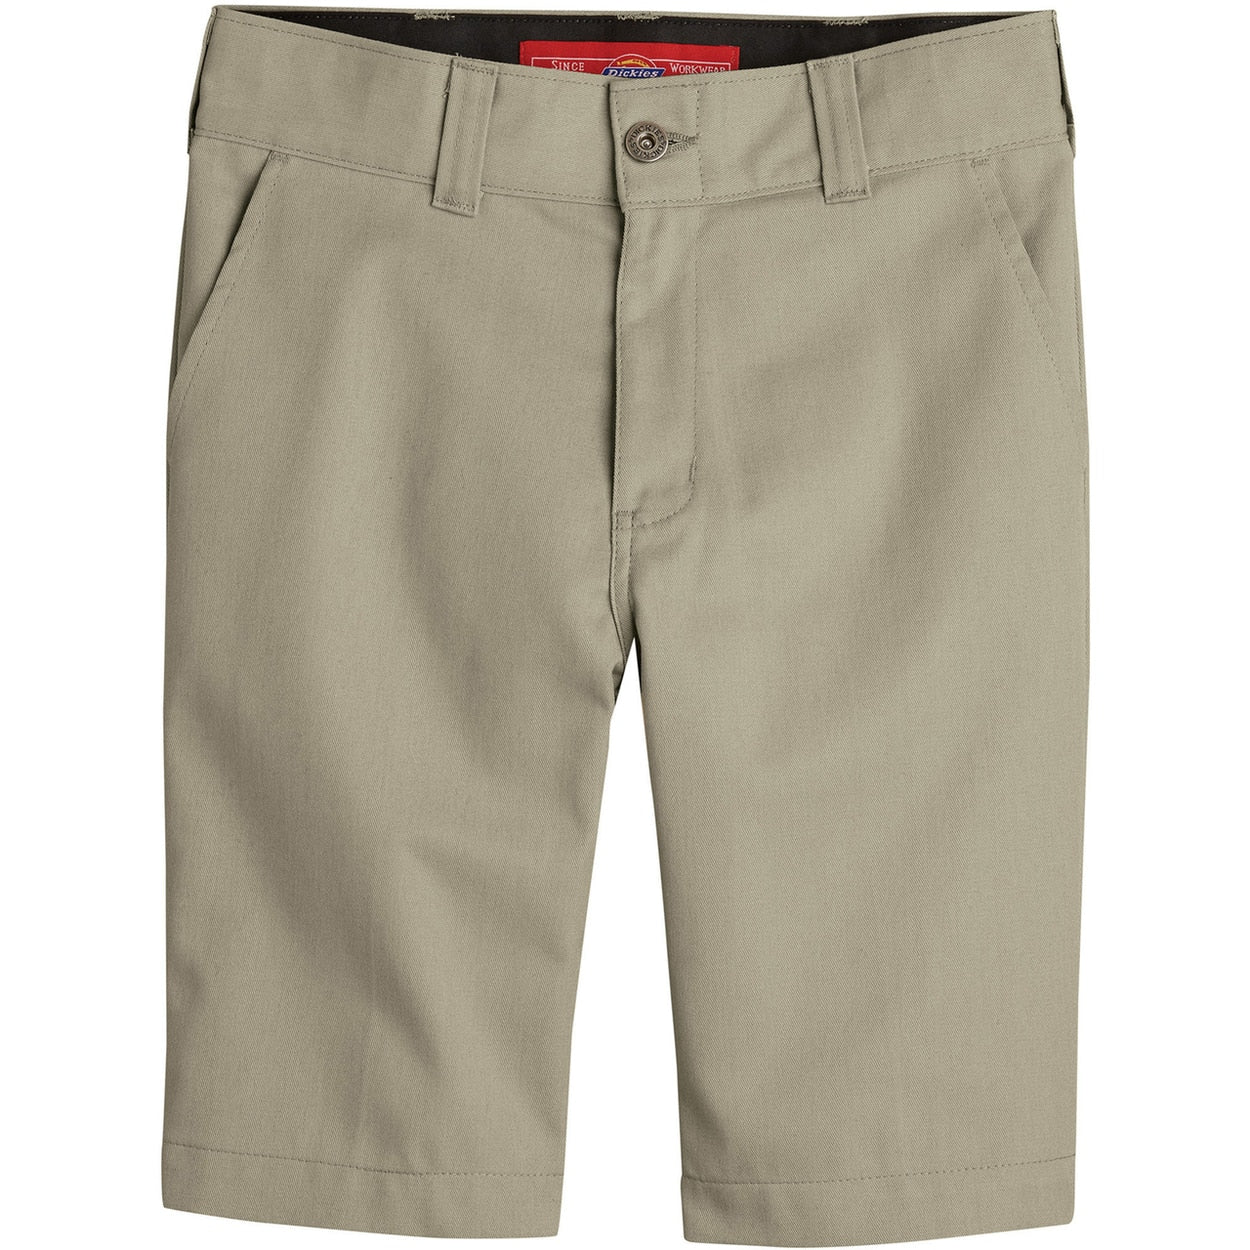 Dickies 67' Boys Slim Fit Flex Shorts - Khaki (Desert Sand)